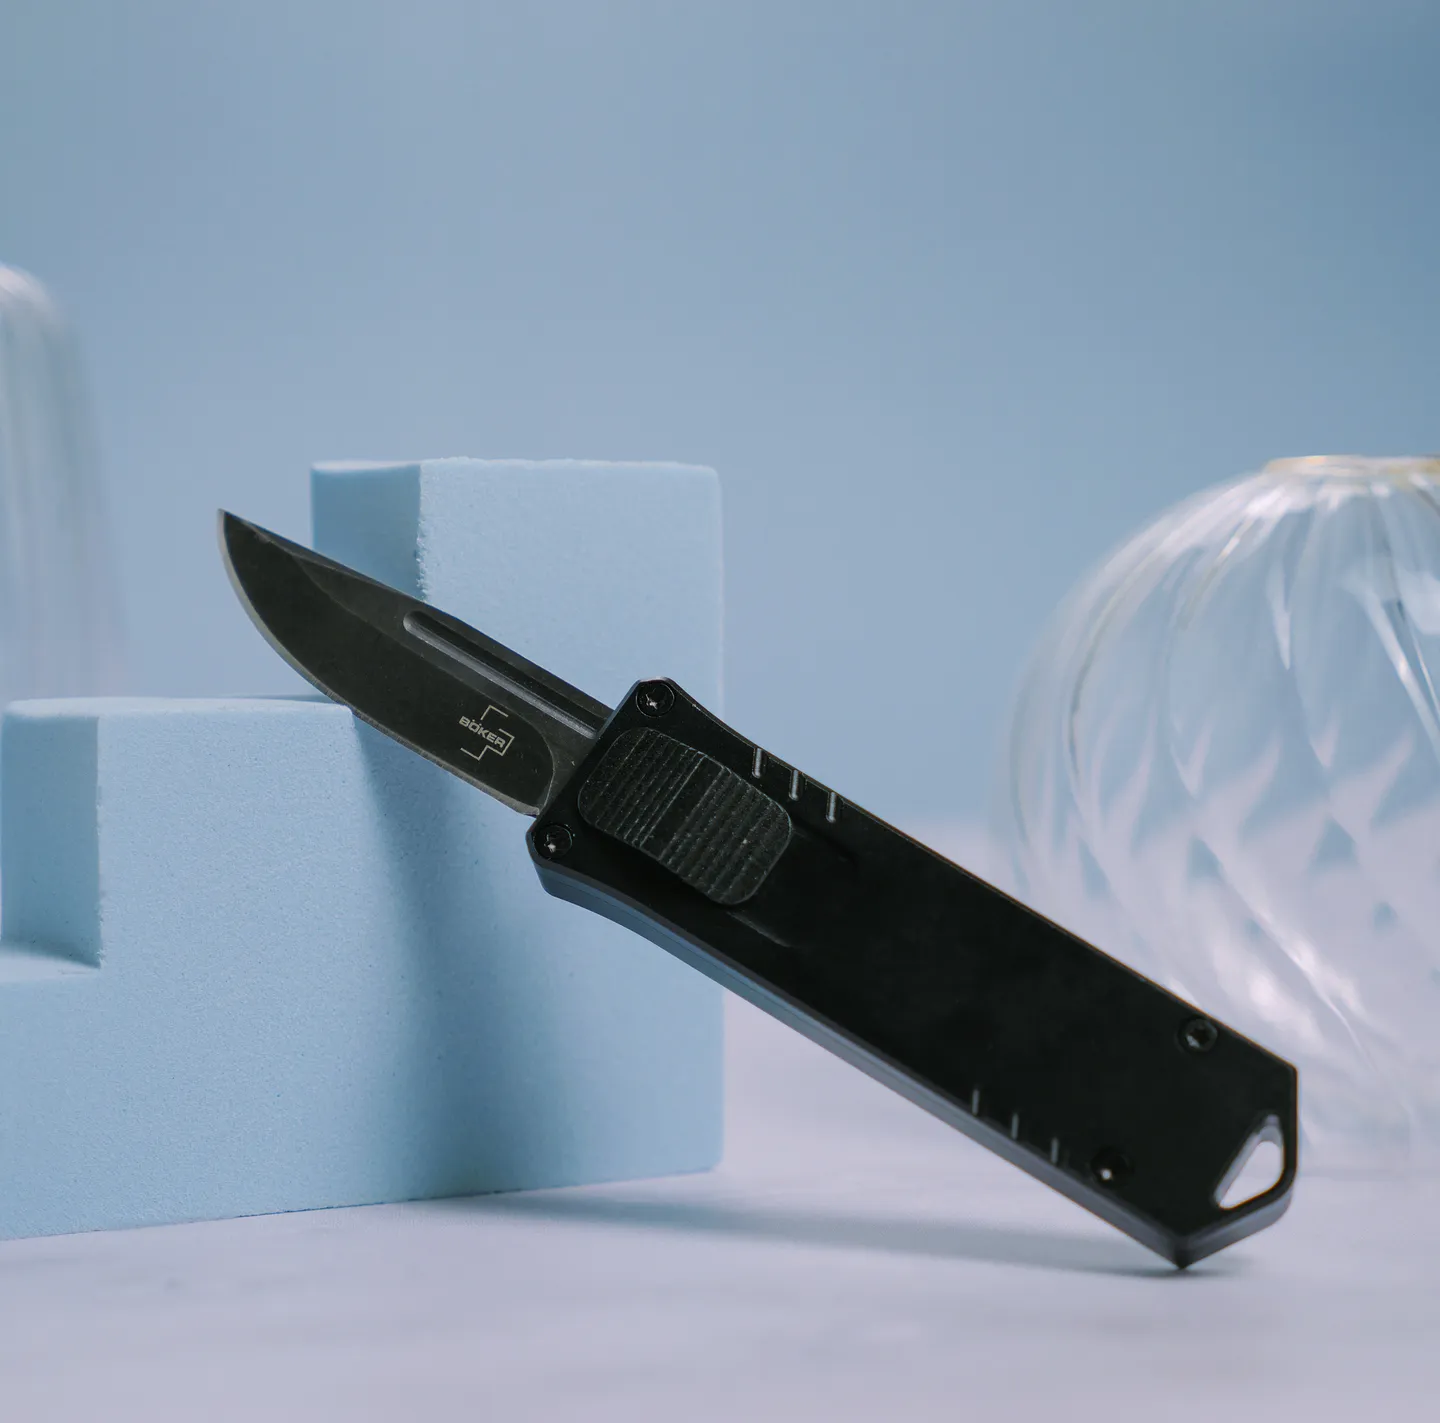 Messer & Kubotan - Automatisches Messer in USB Stick Form